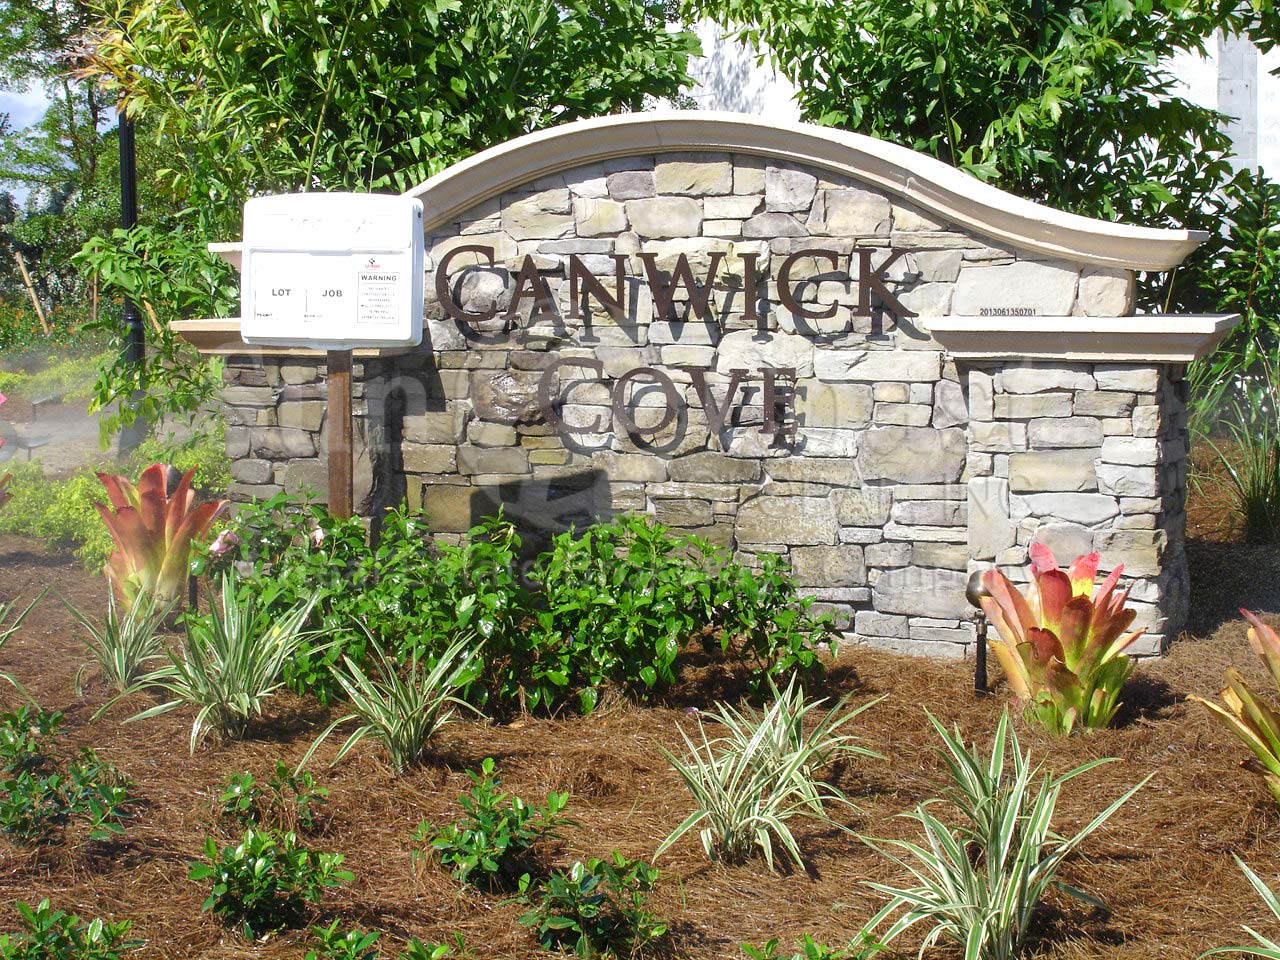 Canwick Cove signage